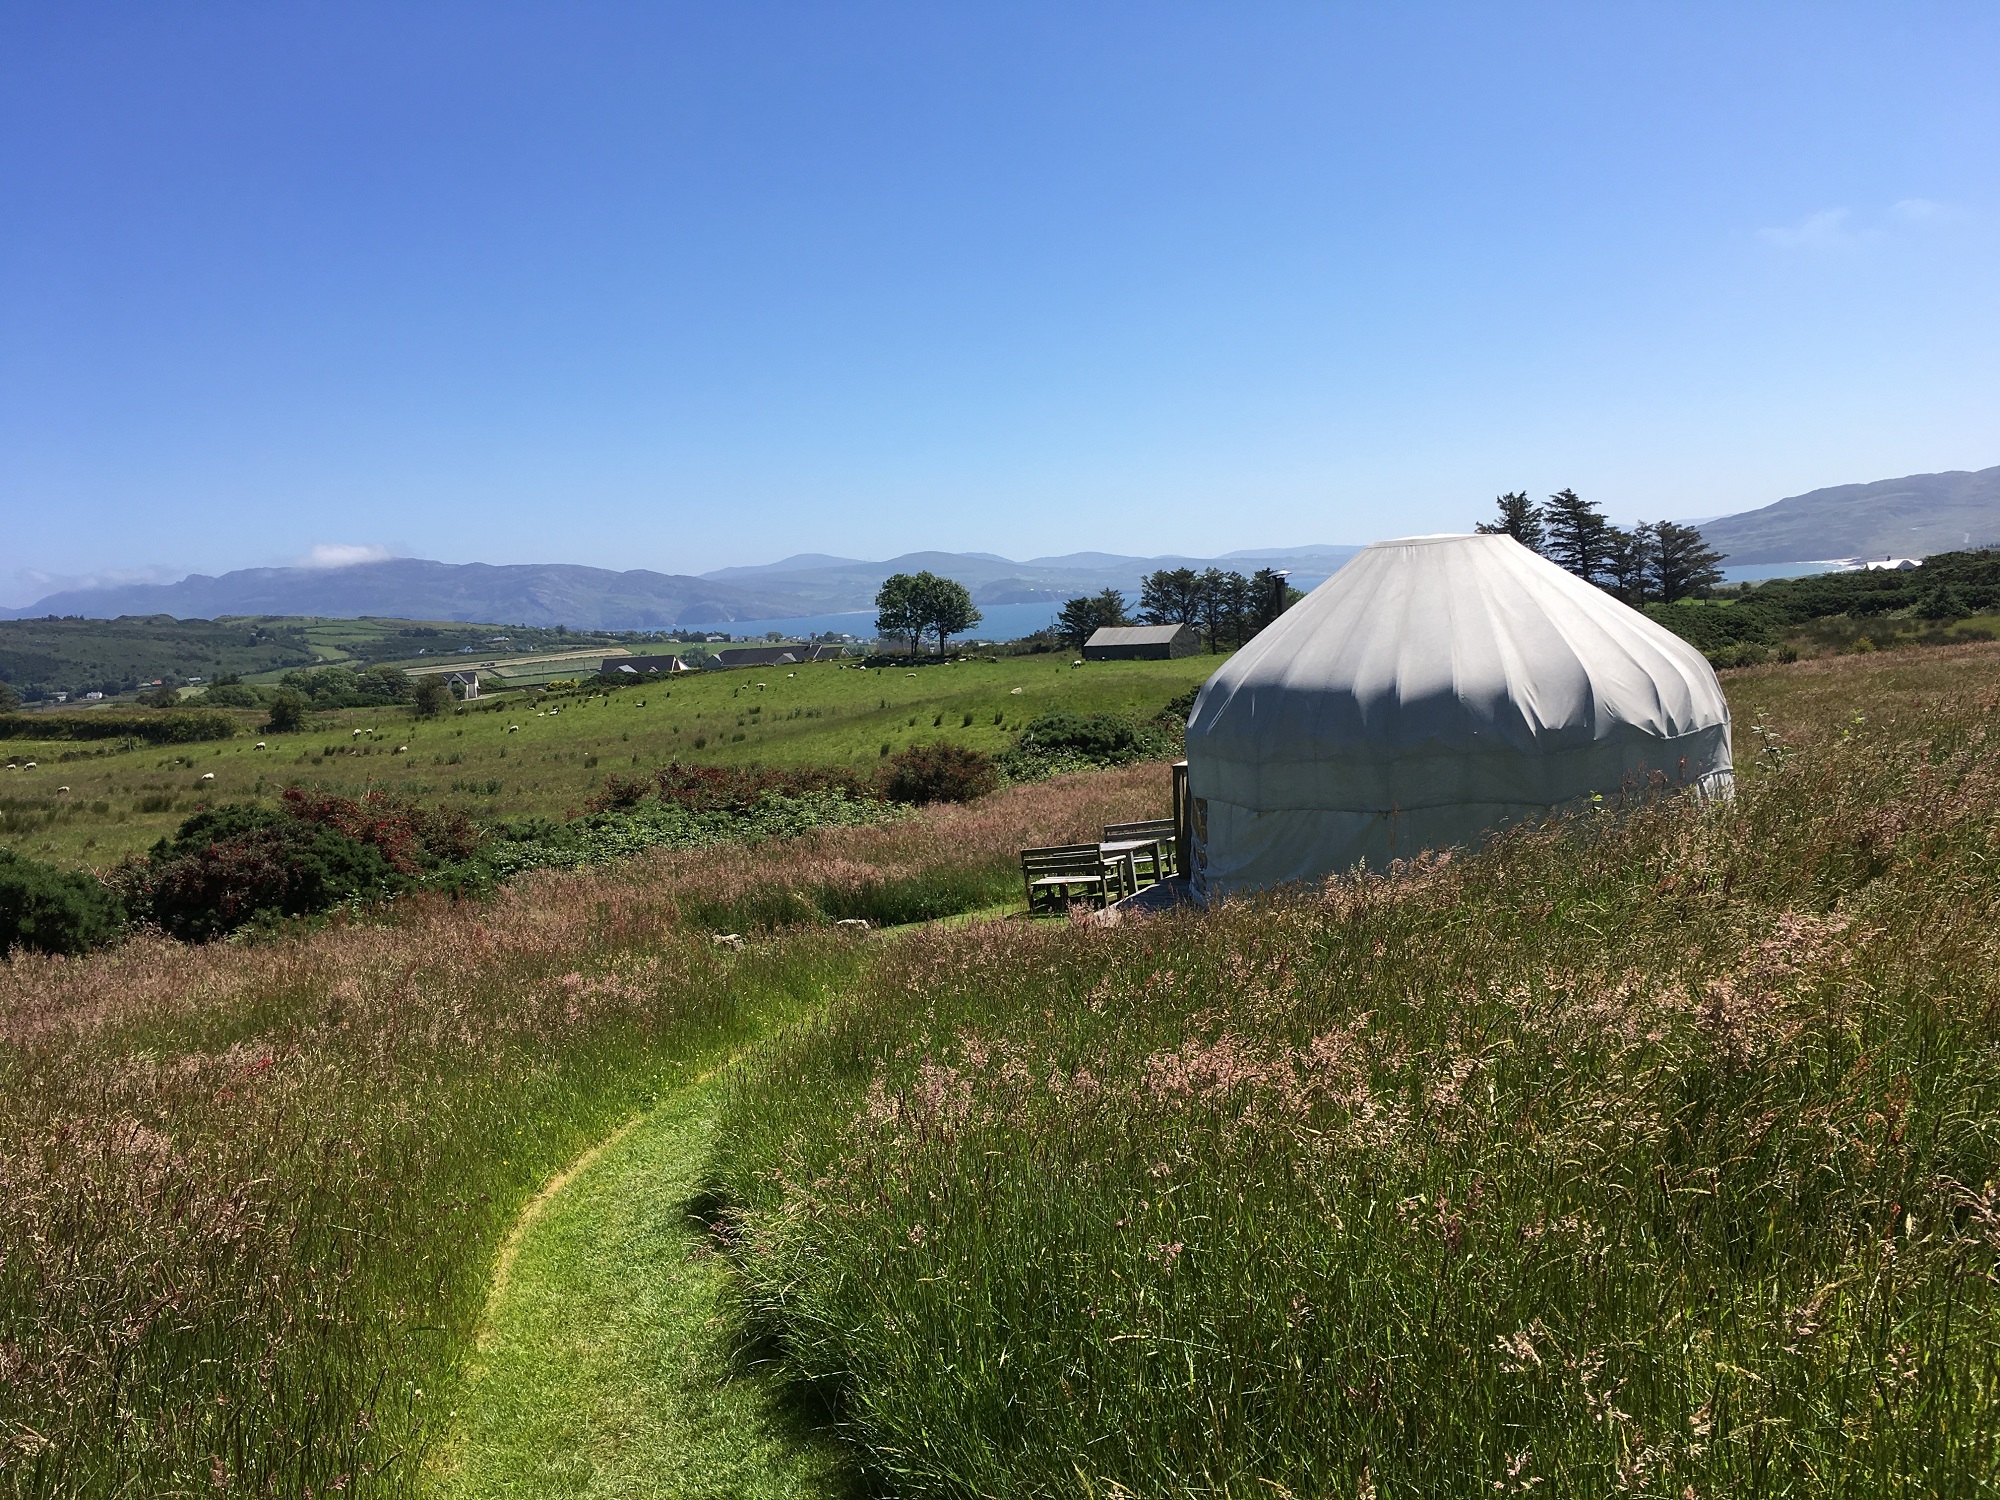 Mowed paths around Ballymastocker yurt